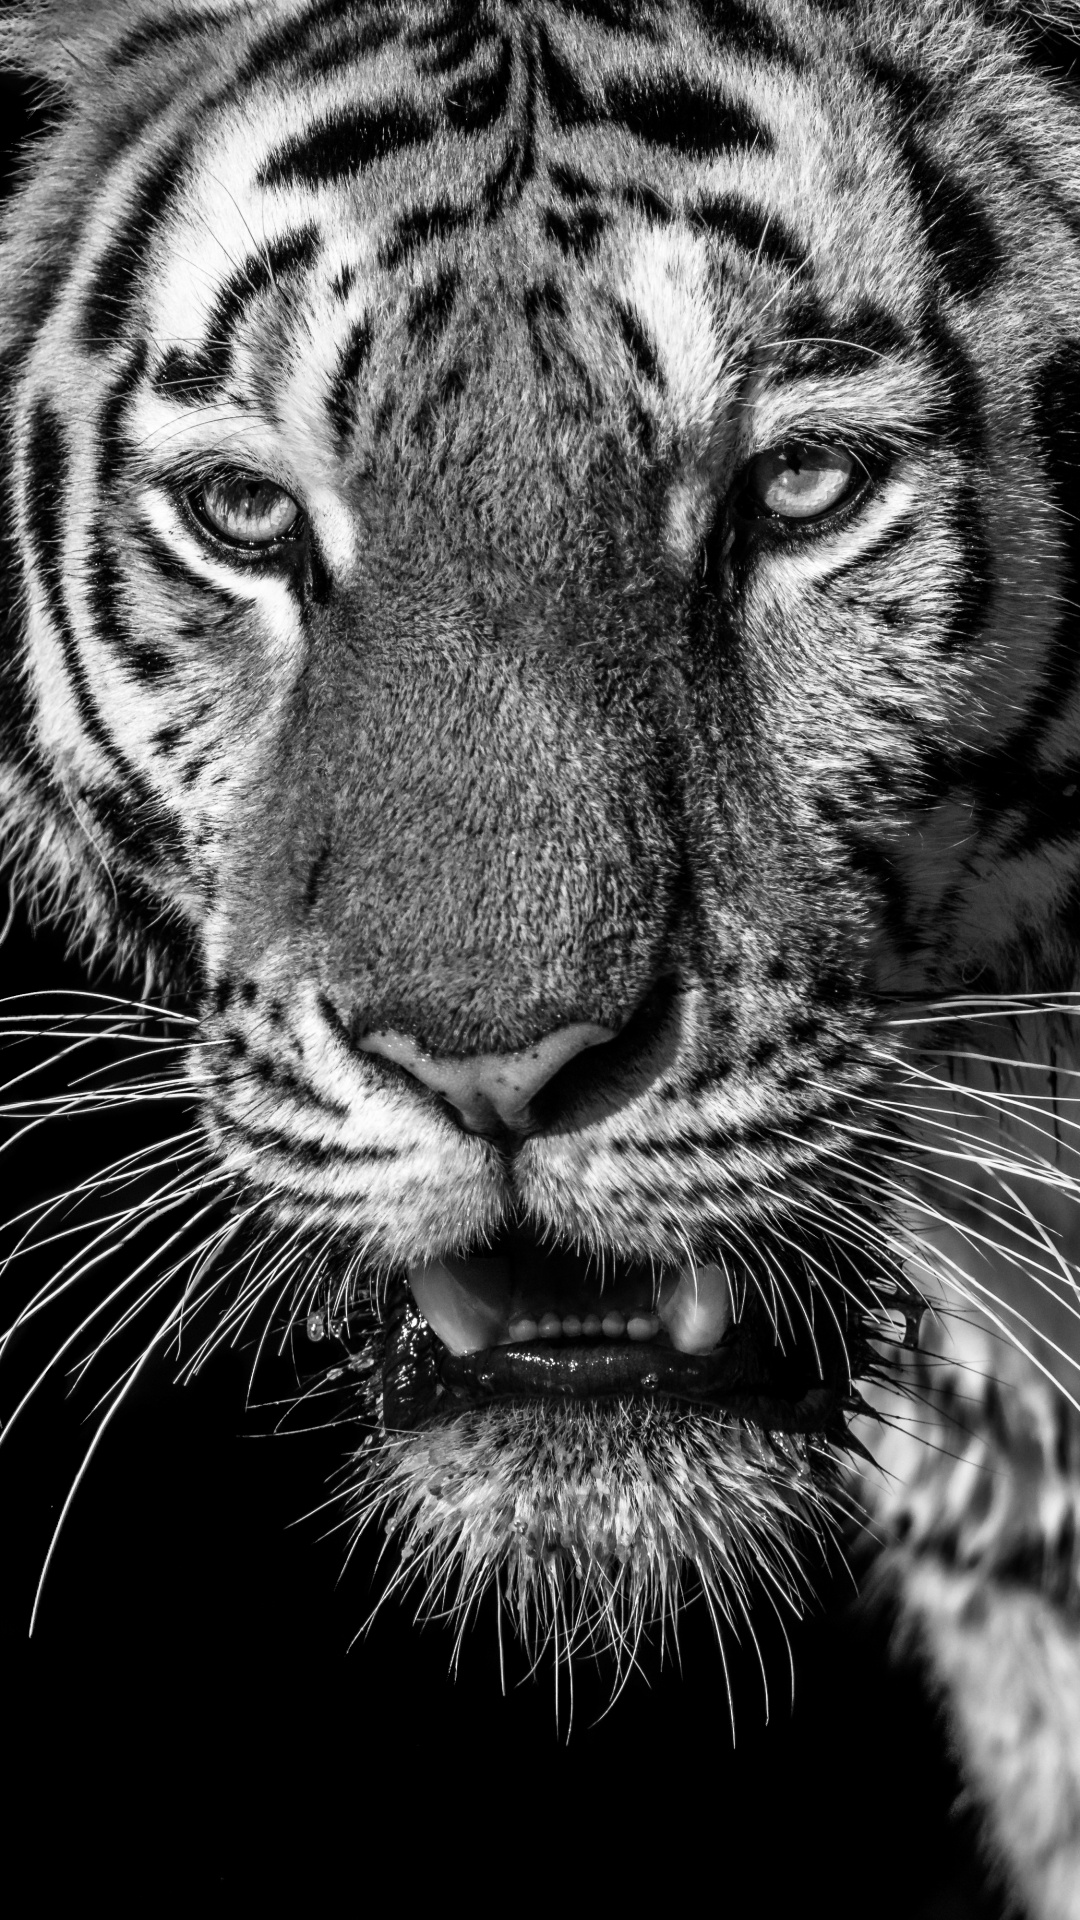 老虎, 白虎, 孟加拉虎, 野生动物, 胡须 壁纸 1080x1920 允许